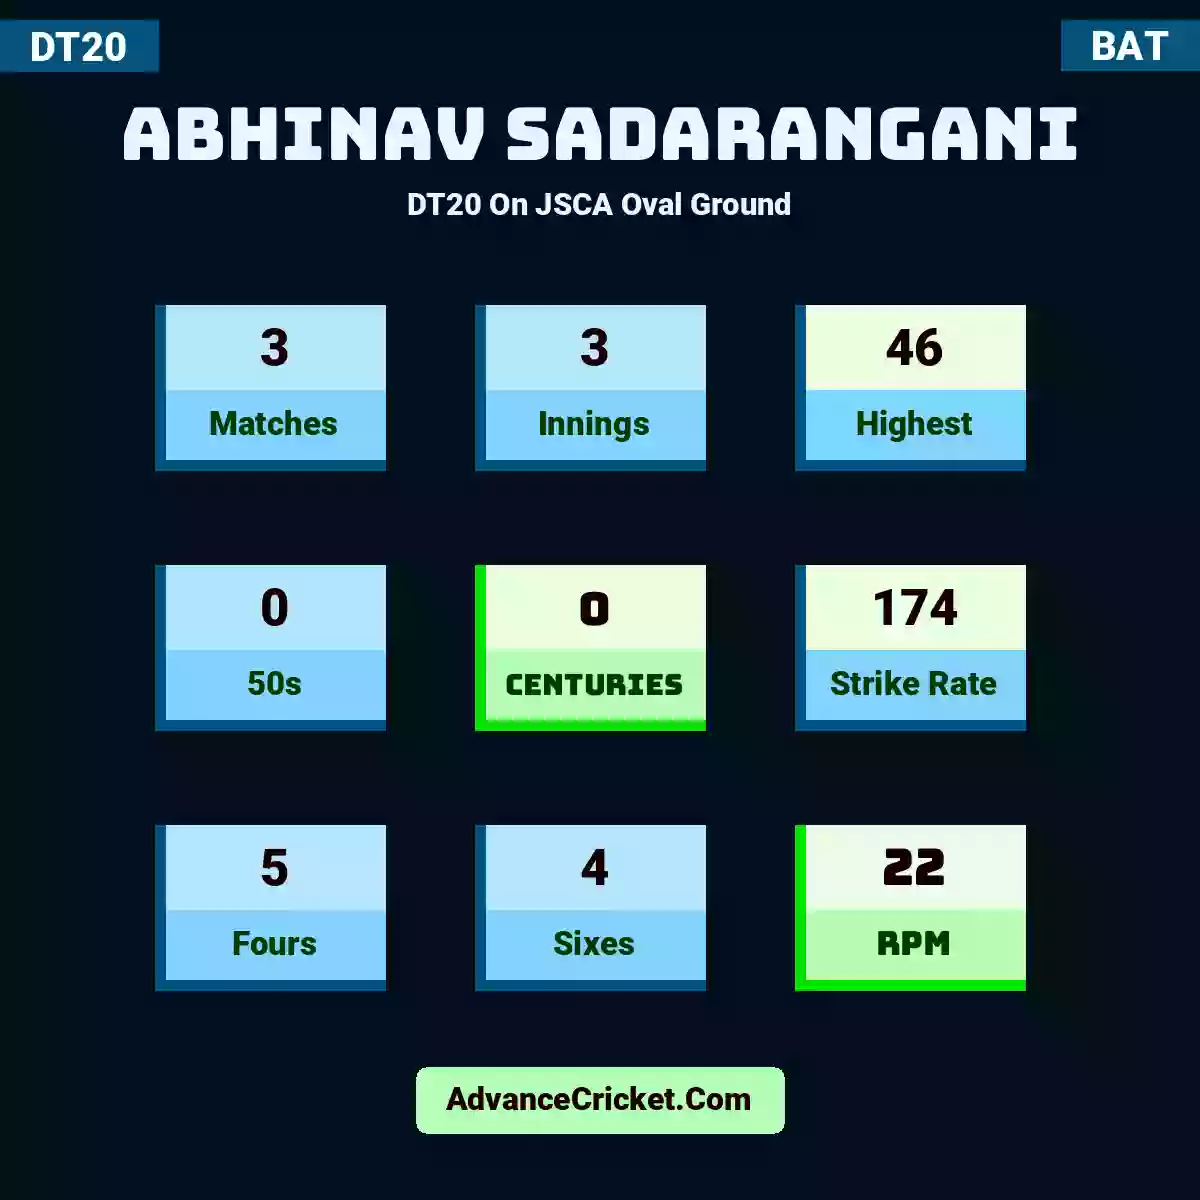 Abhinav Sadarangani DT20  On JSCA Oval Ground, Abhinav Sadarangani played 3 matches, scored 46 runs as highest, 0 half-centuries, and 0 centuries, with a strike rate of 174. A.Sadarangani hit 5 fours and 4 sixes, with an RPM of 22.